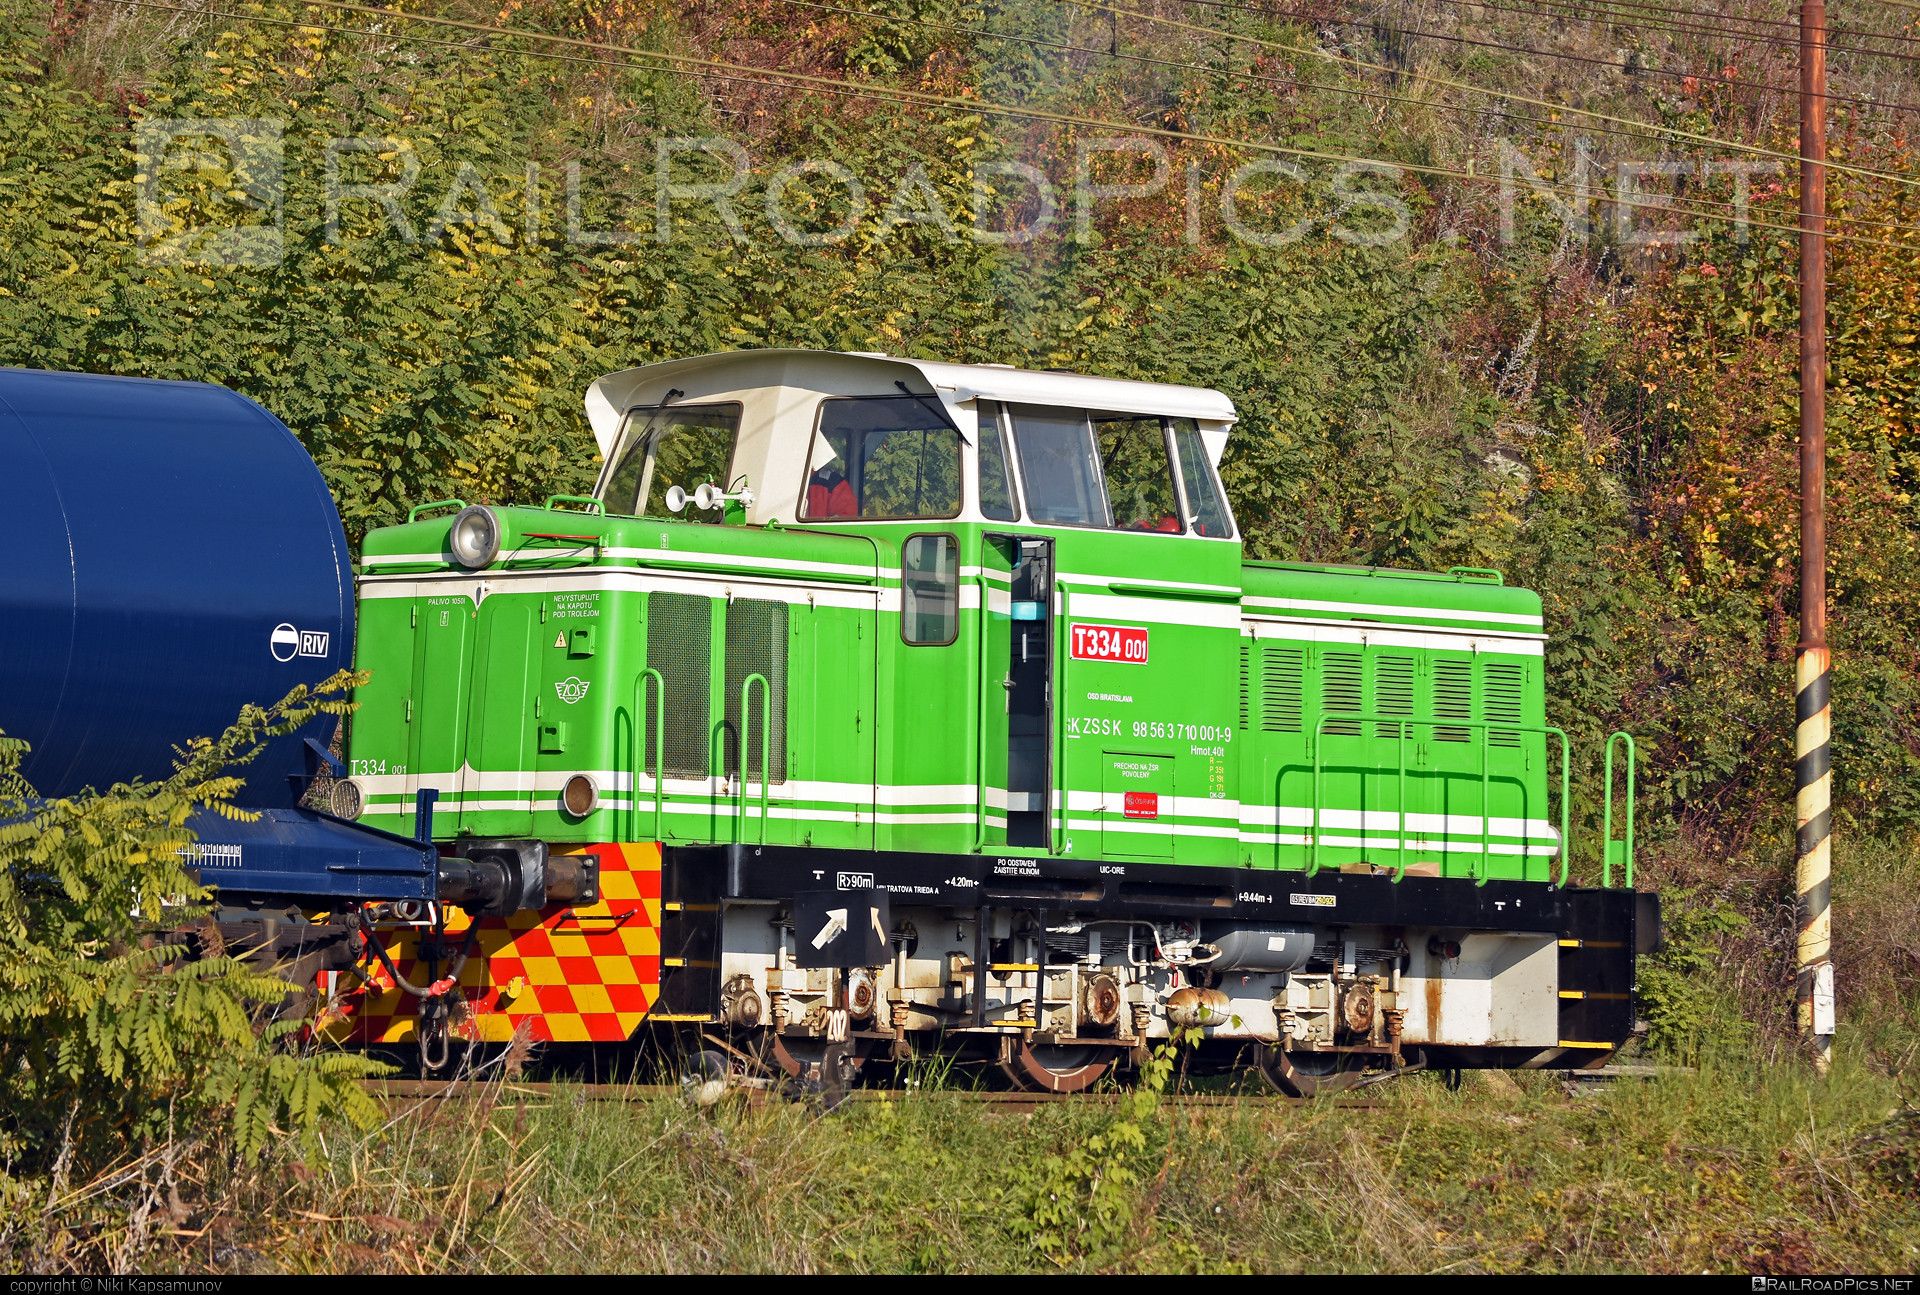 ČKD T 334.0 (710) - T334.001 operated by Železničná Spoločnost' Slovensko, a.s. #ZeleznicnaSpolocnostSlovensko #ckd #ckd3340 #ckd710 #ckdt3340 #rosnicka #zssk